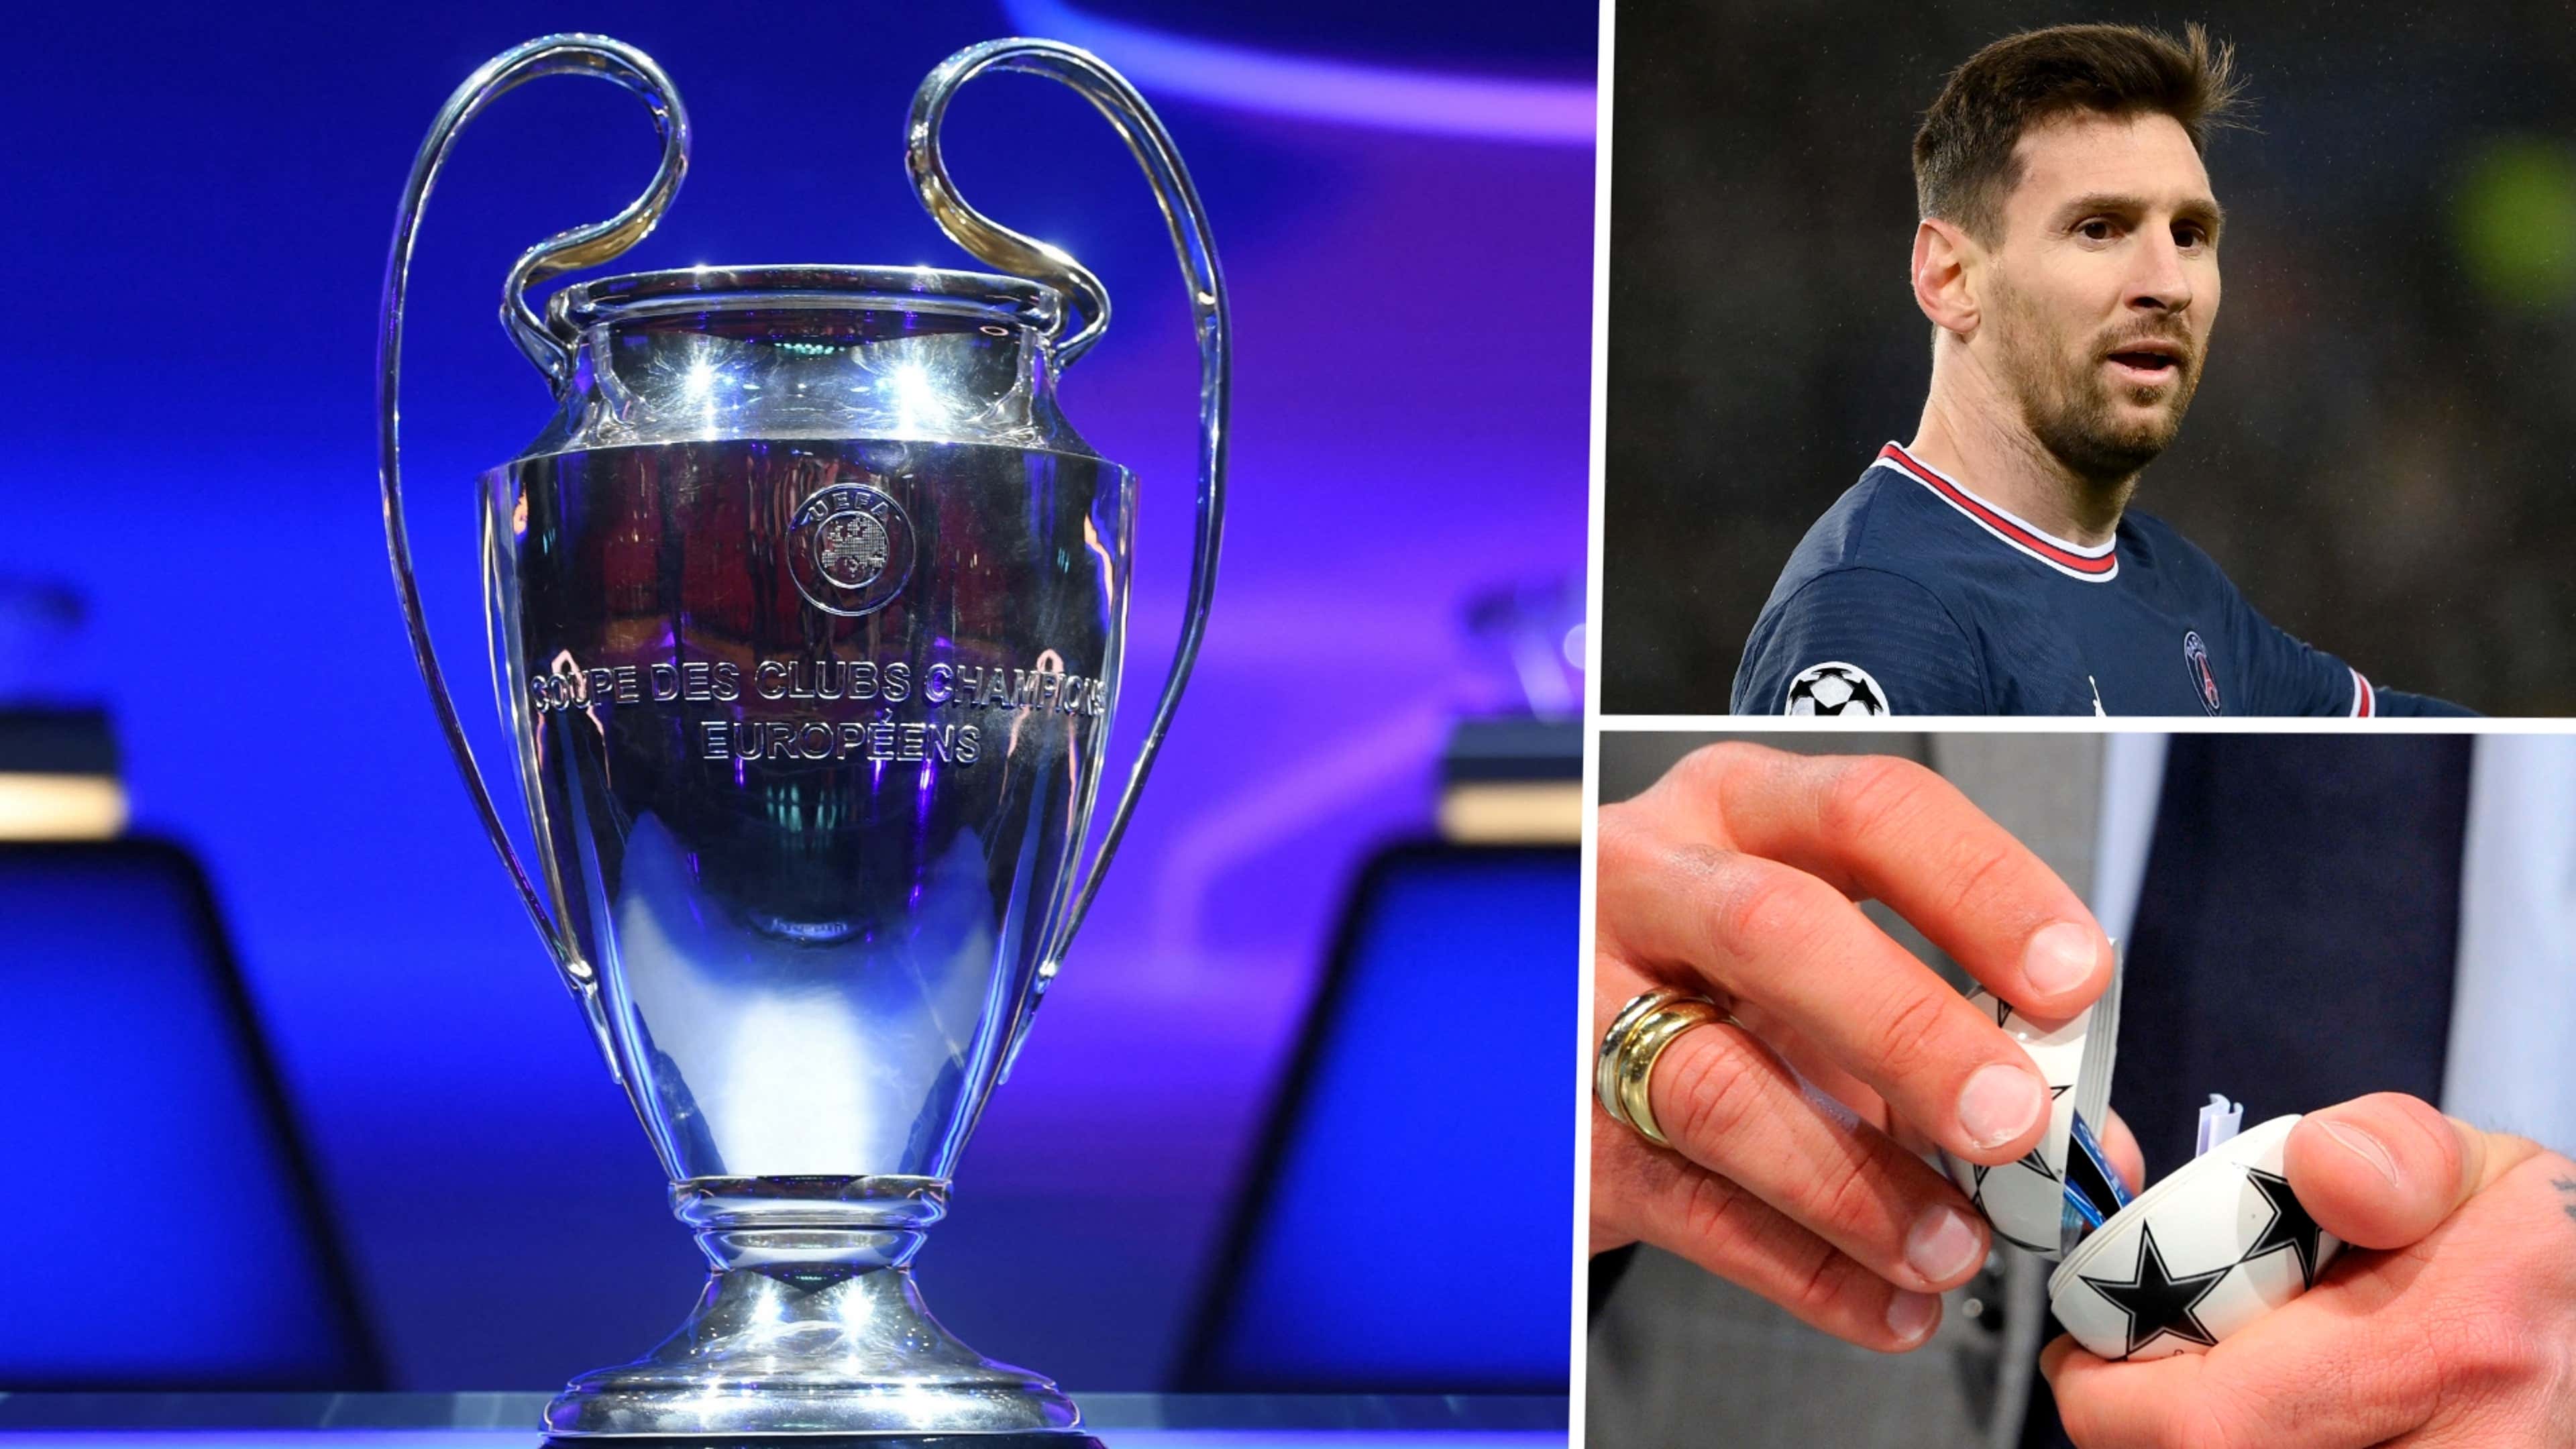 Sorteio dos oitavos-de-final da UEFA Champions League: Onde e quando é,  quem participa?, UEFA Champions League